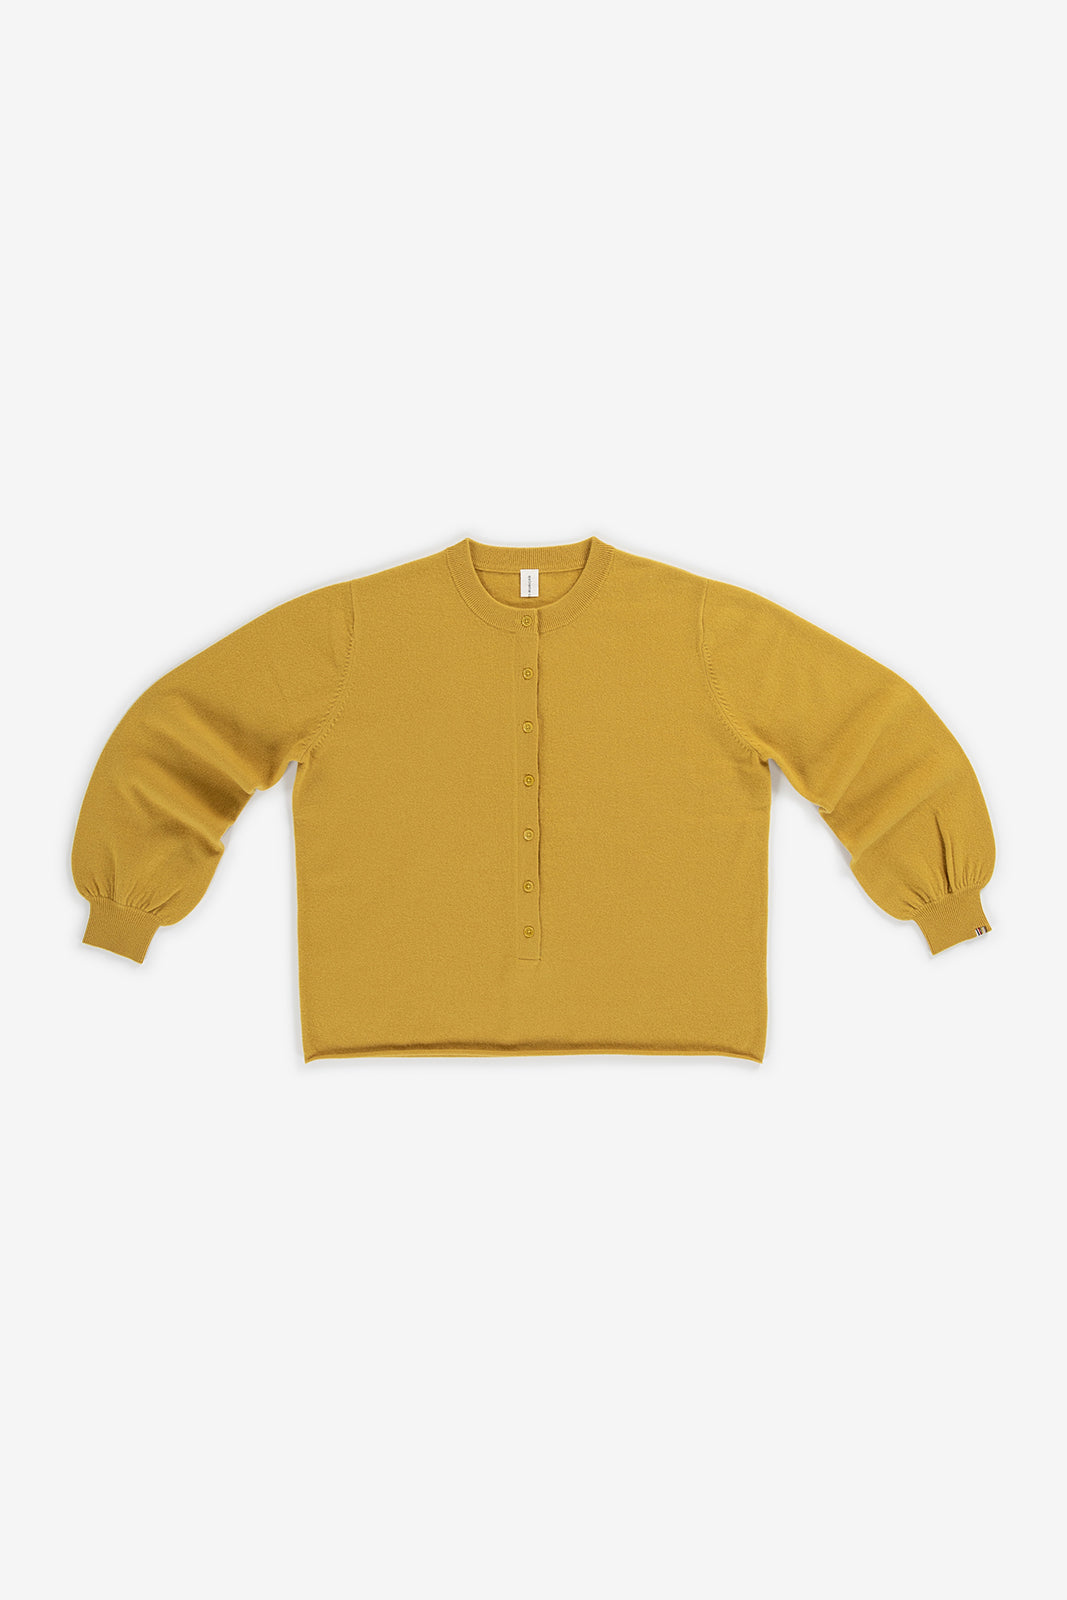 No 280 Bi Sweater